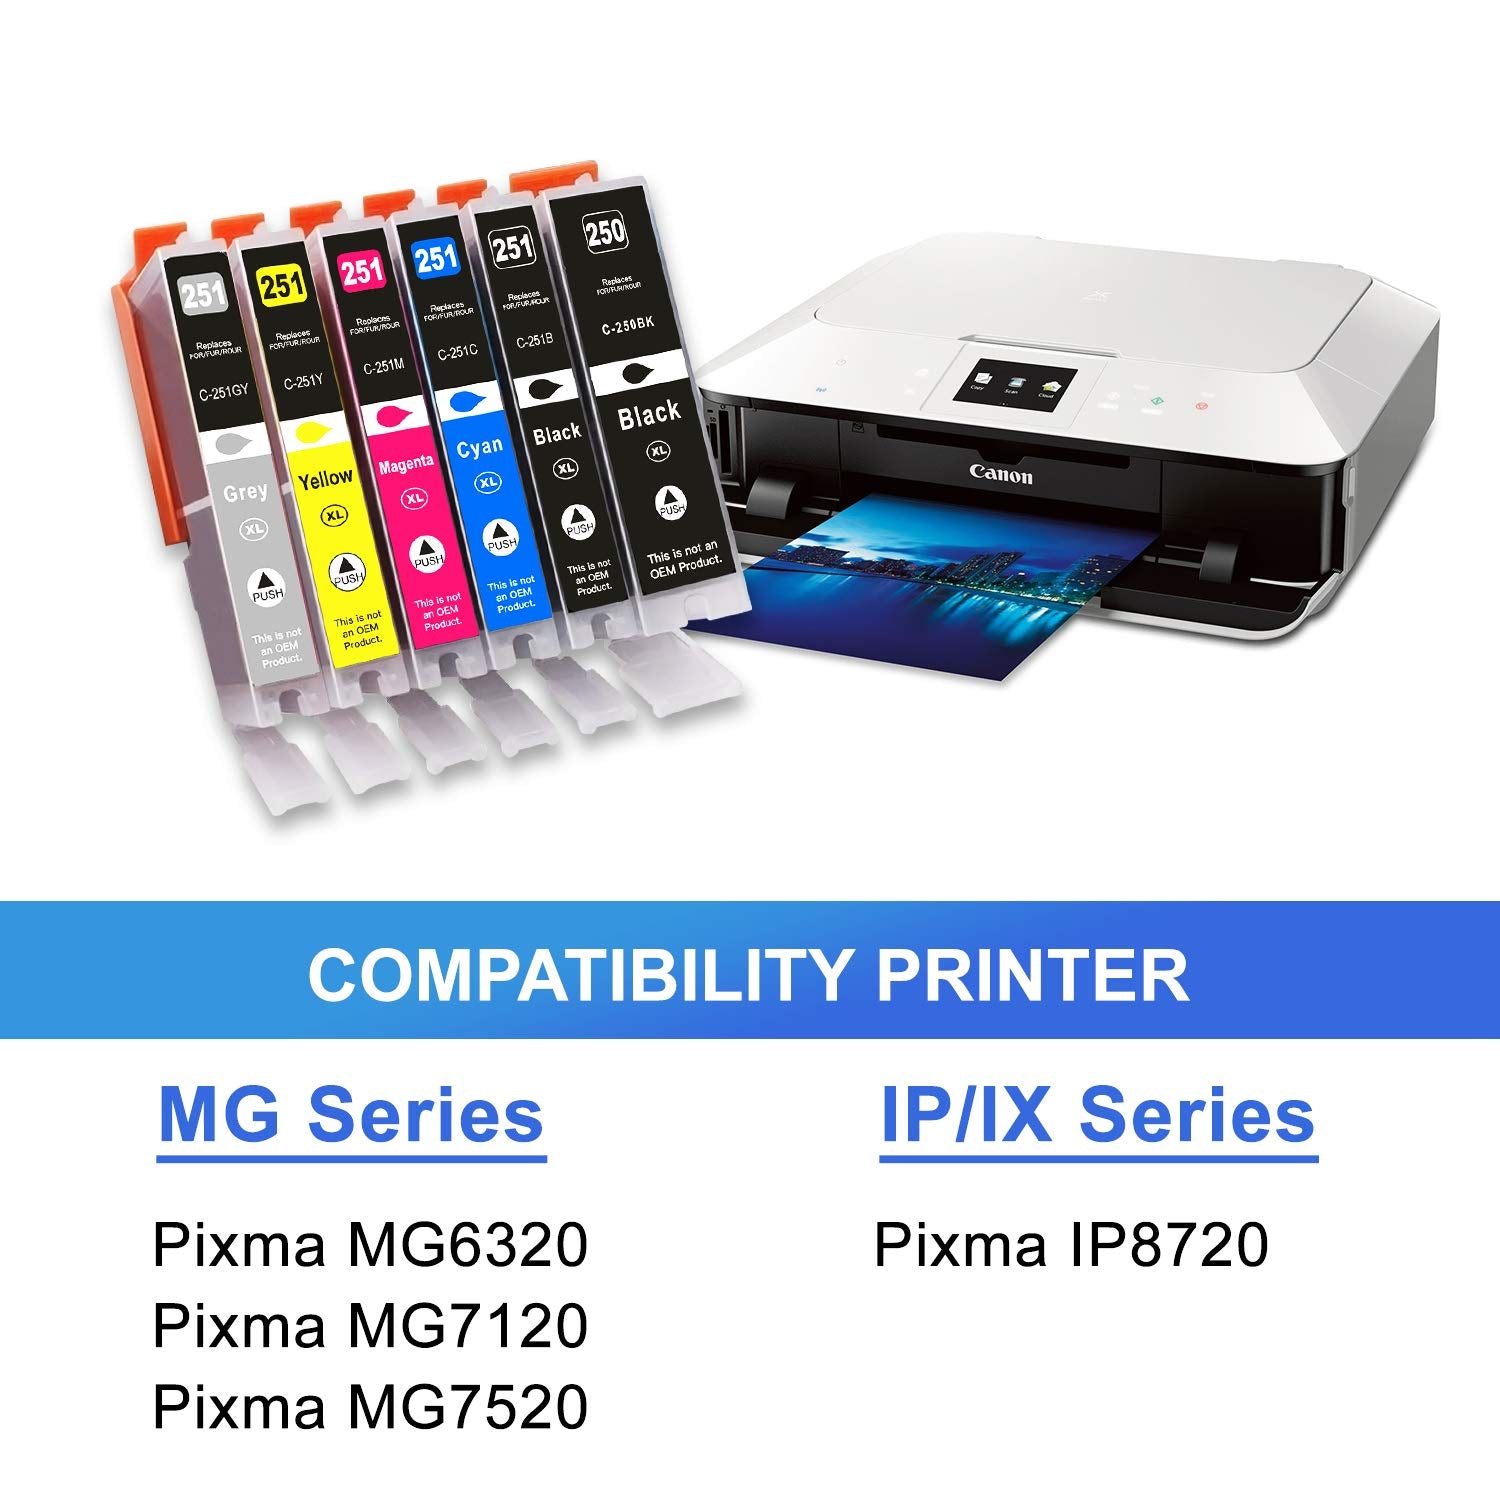 Imprimantes compatibles avec Toner CANON 054